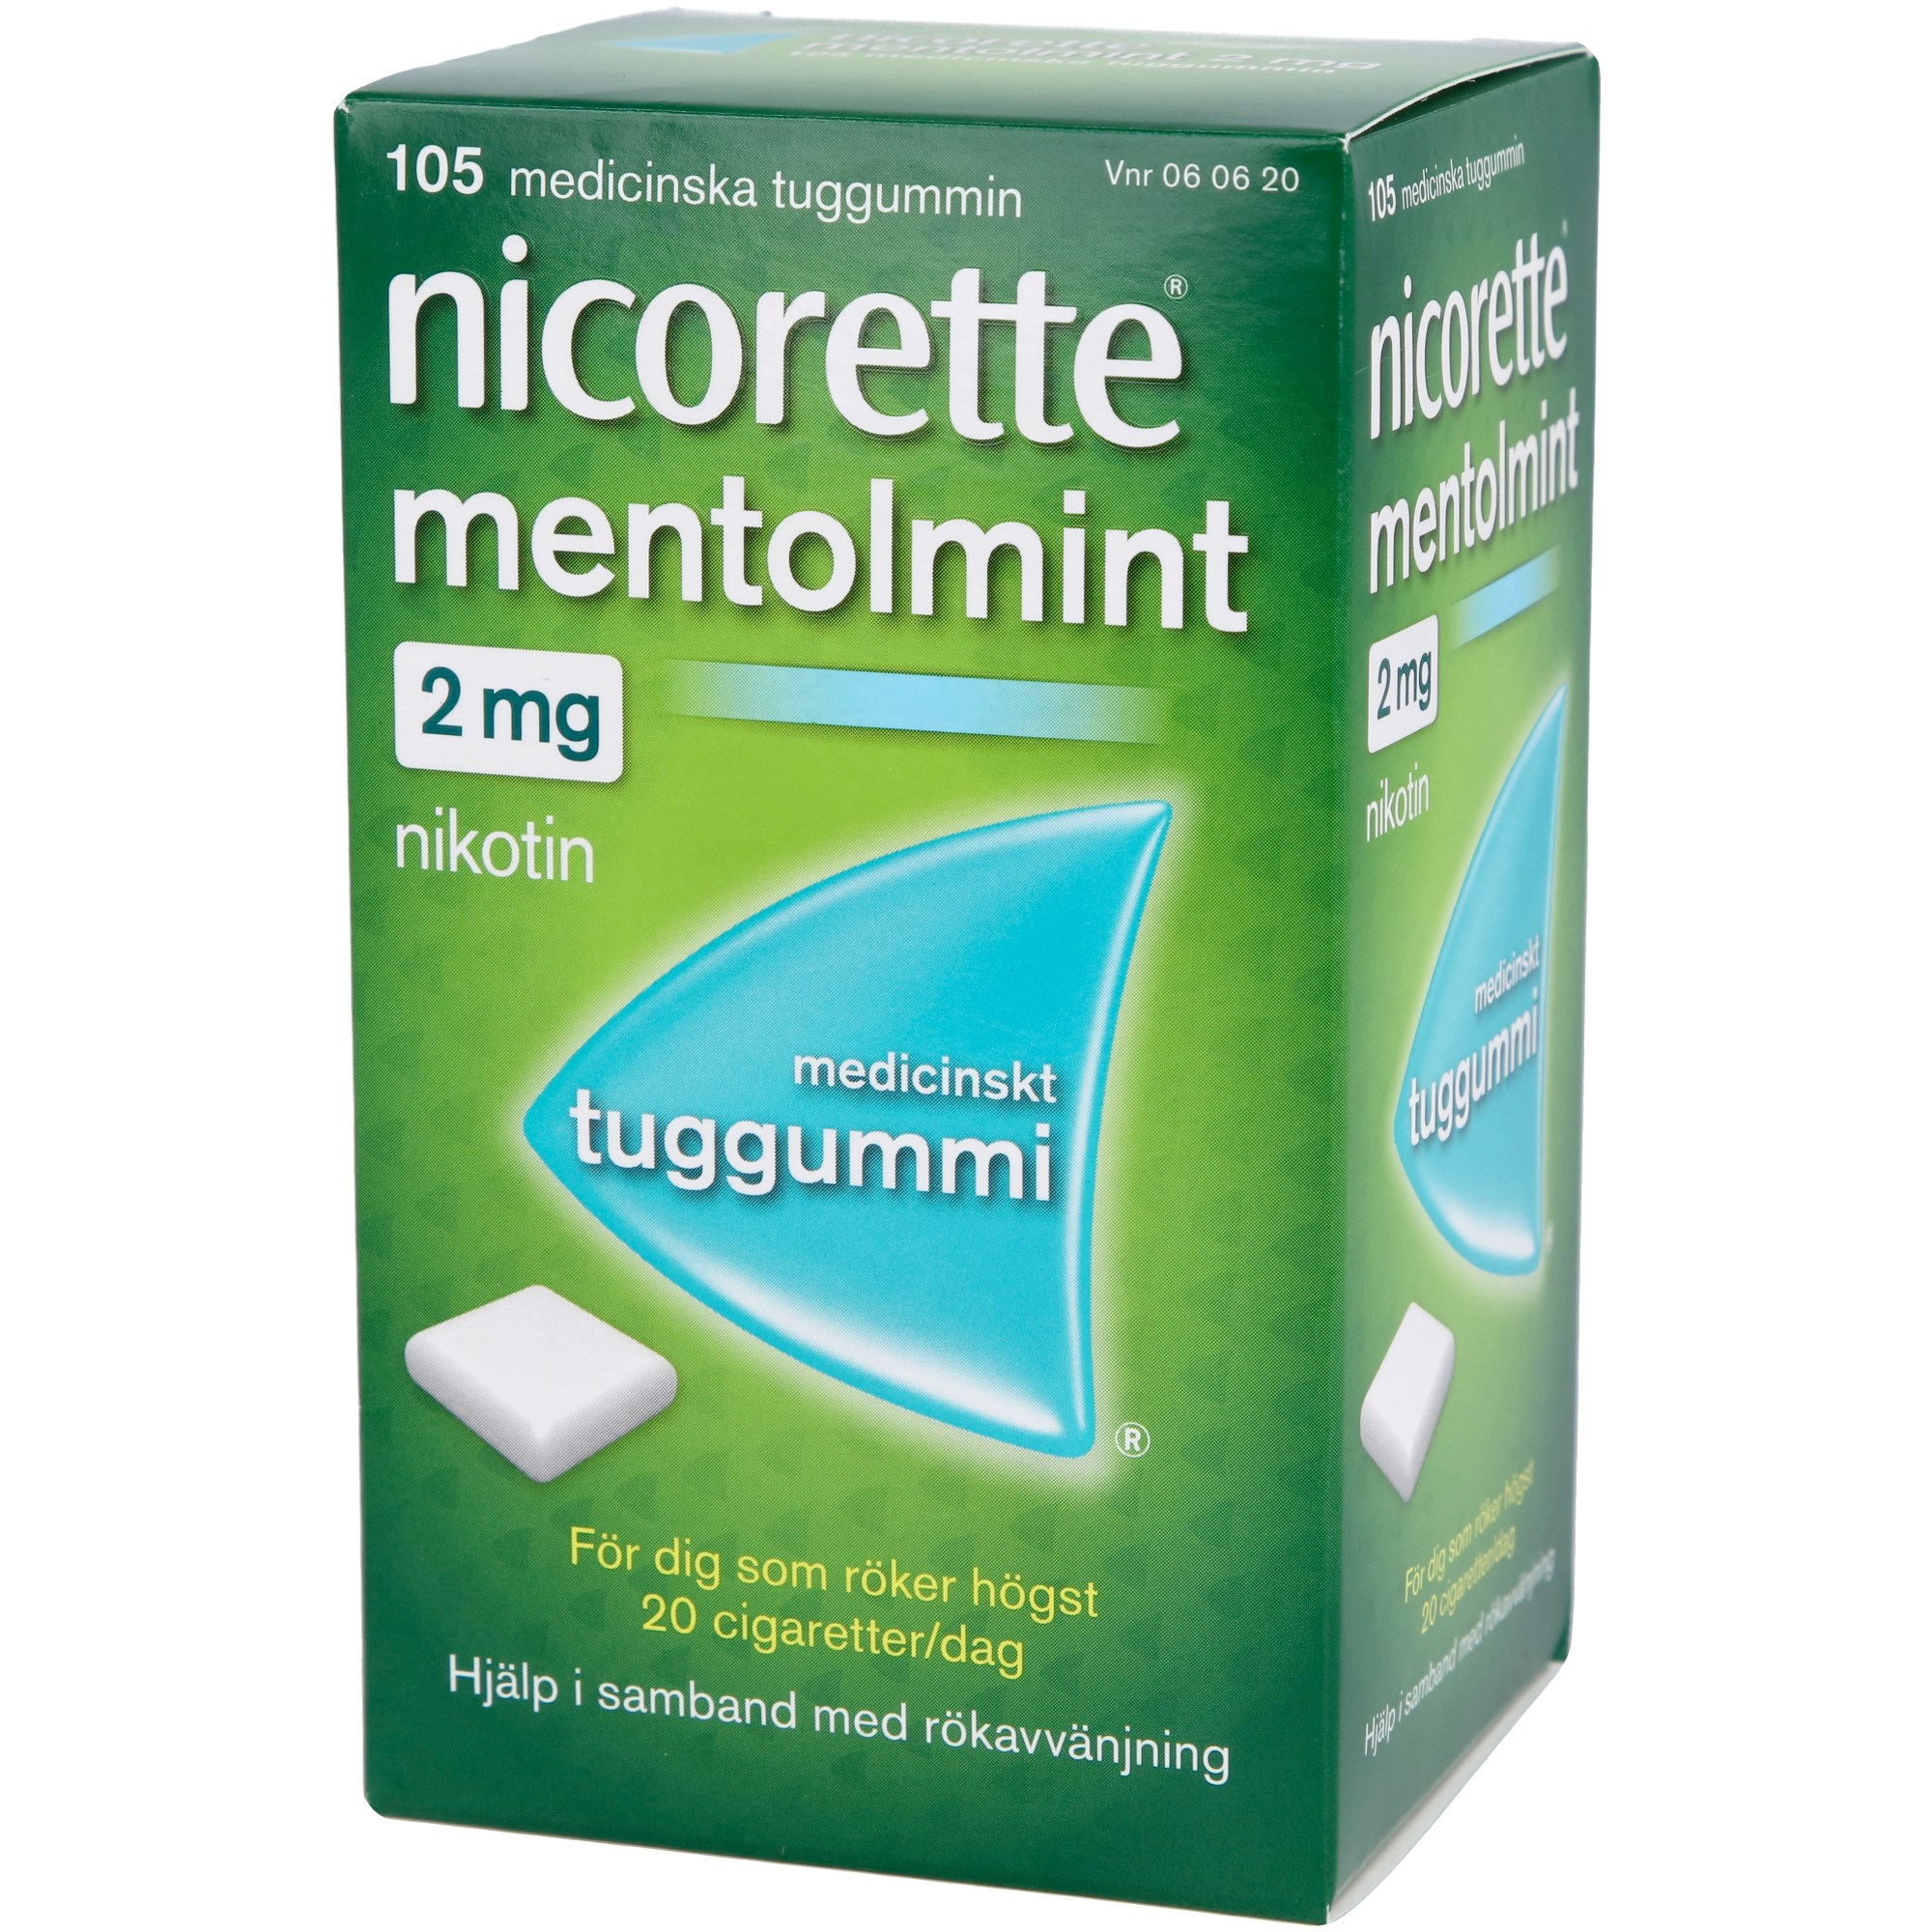 Läs mer om Nicorette Medicinskt tuggummi Mentholmint 2mg 105 st